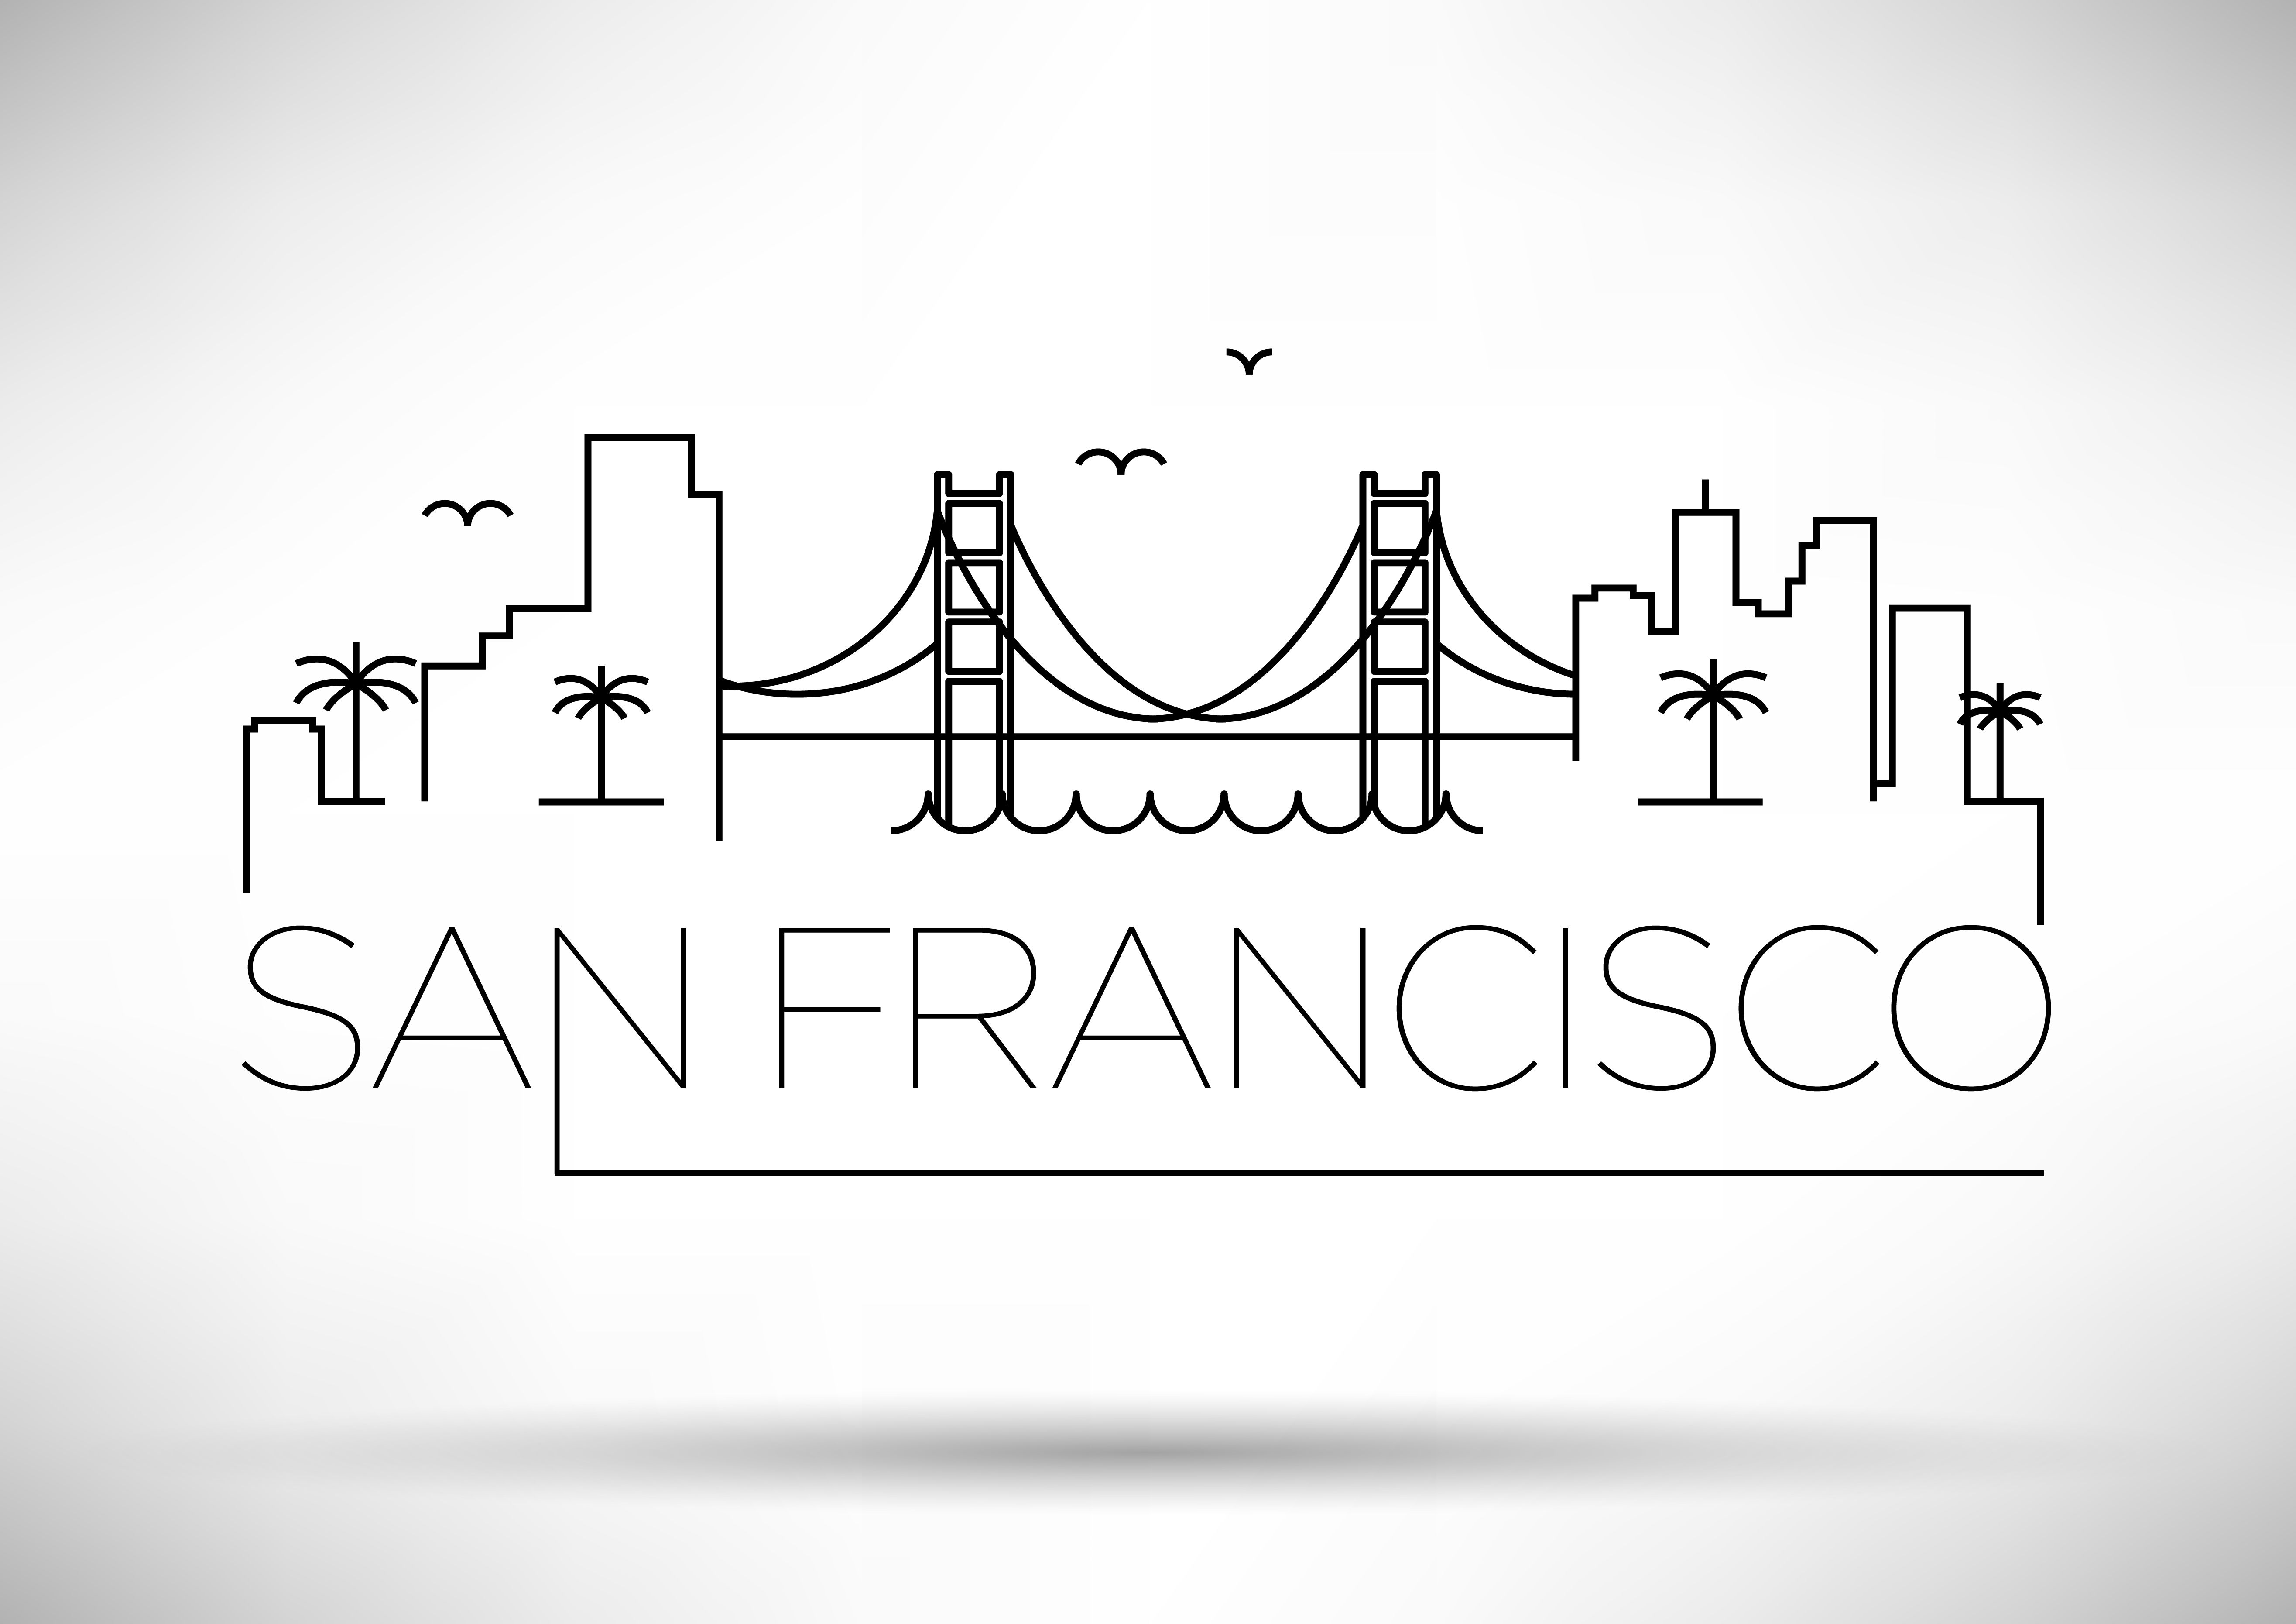 San Francisco Skyline Drawing at Explore